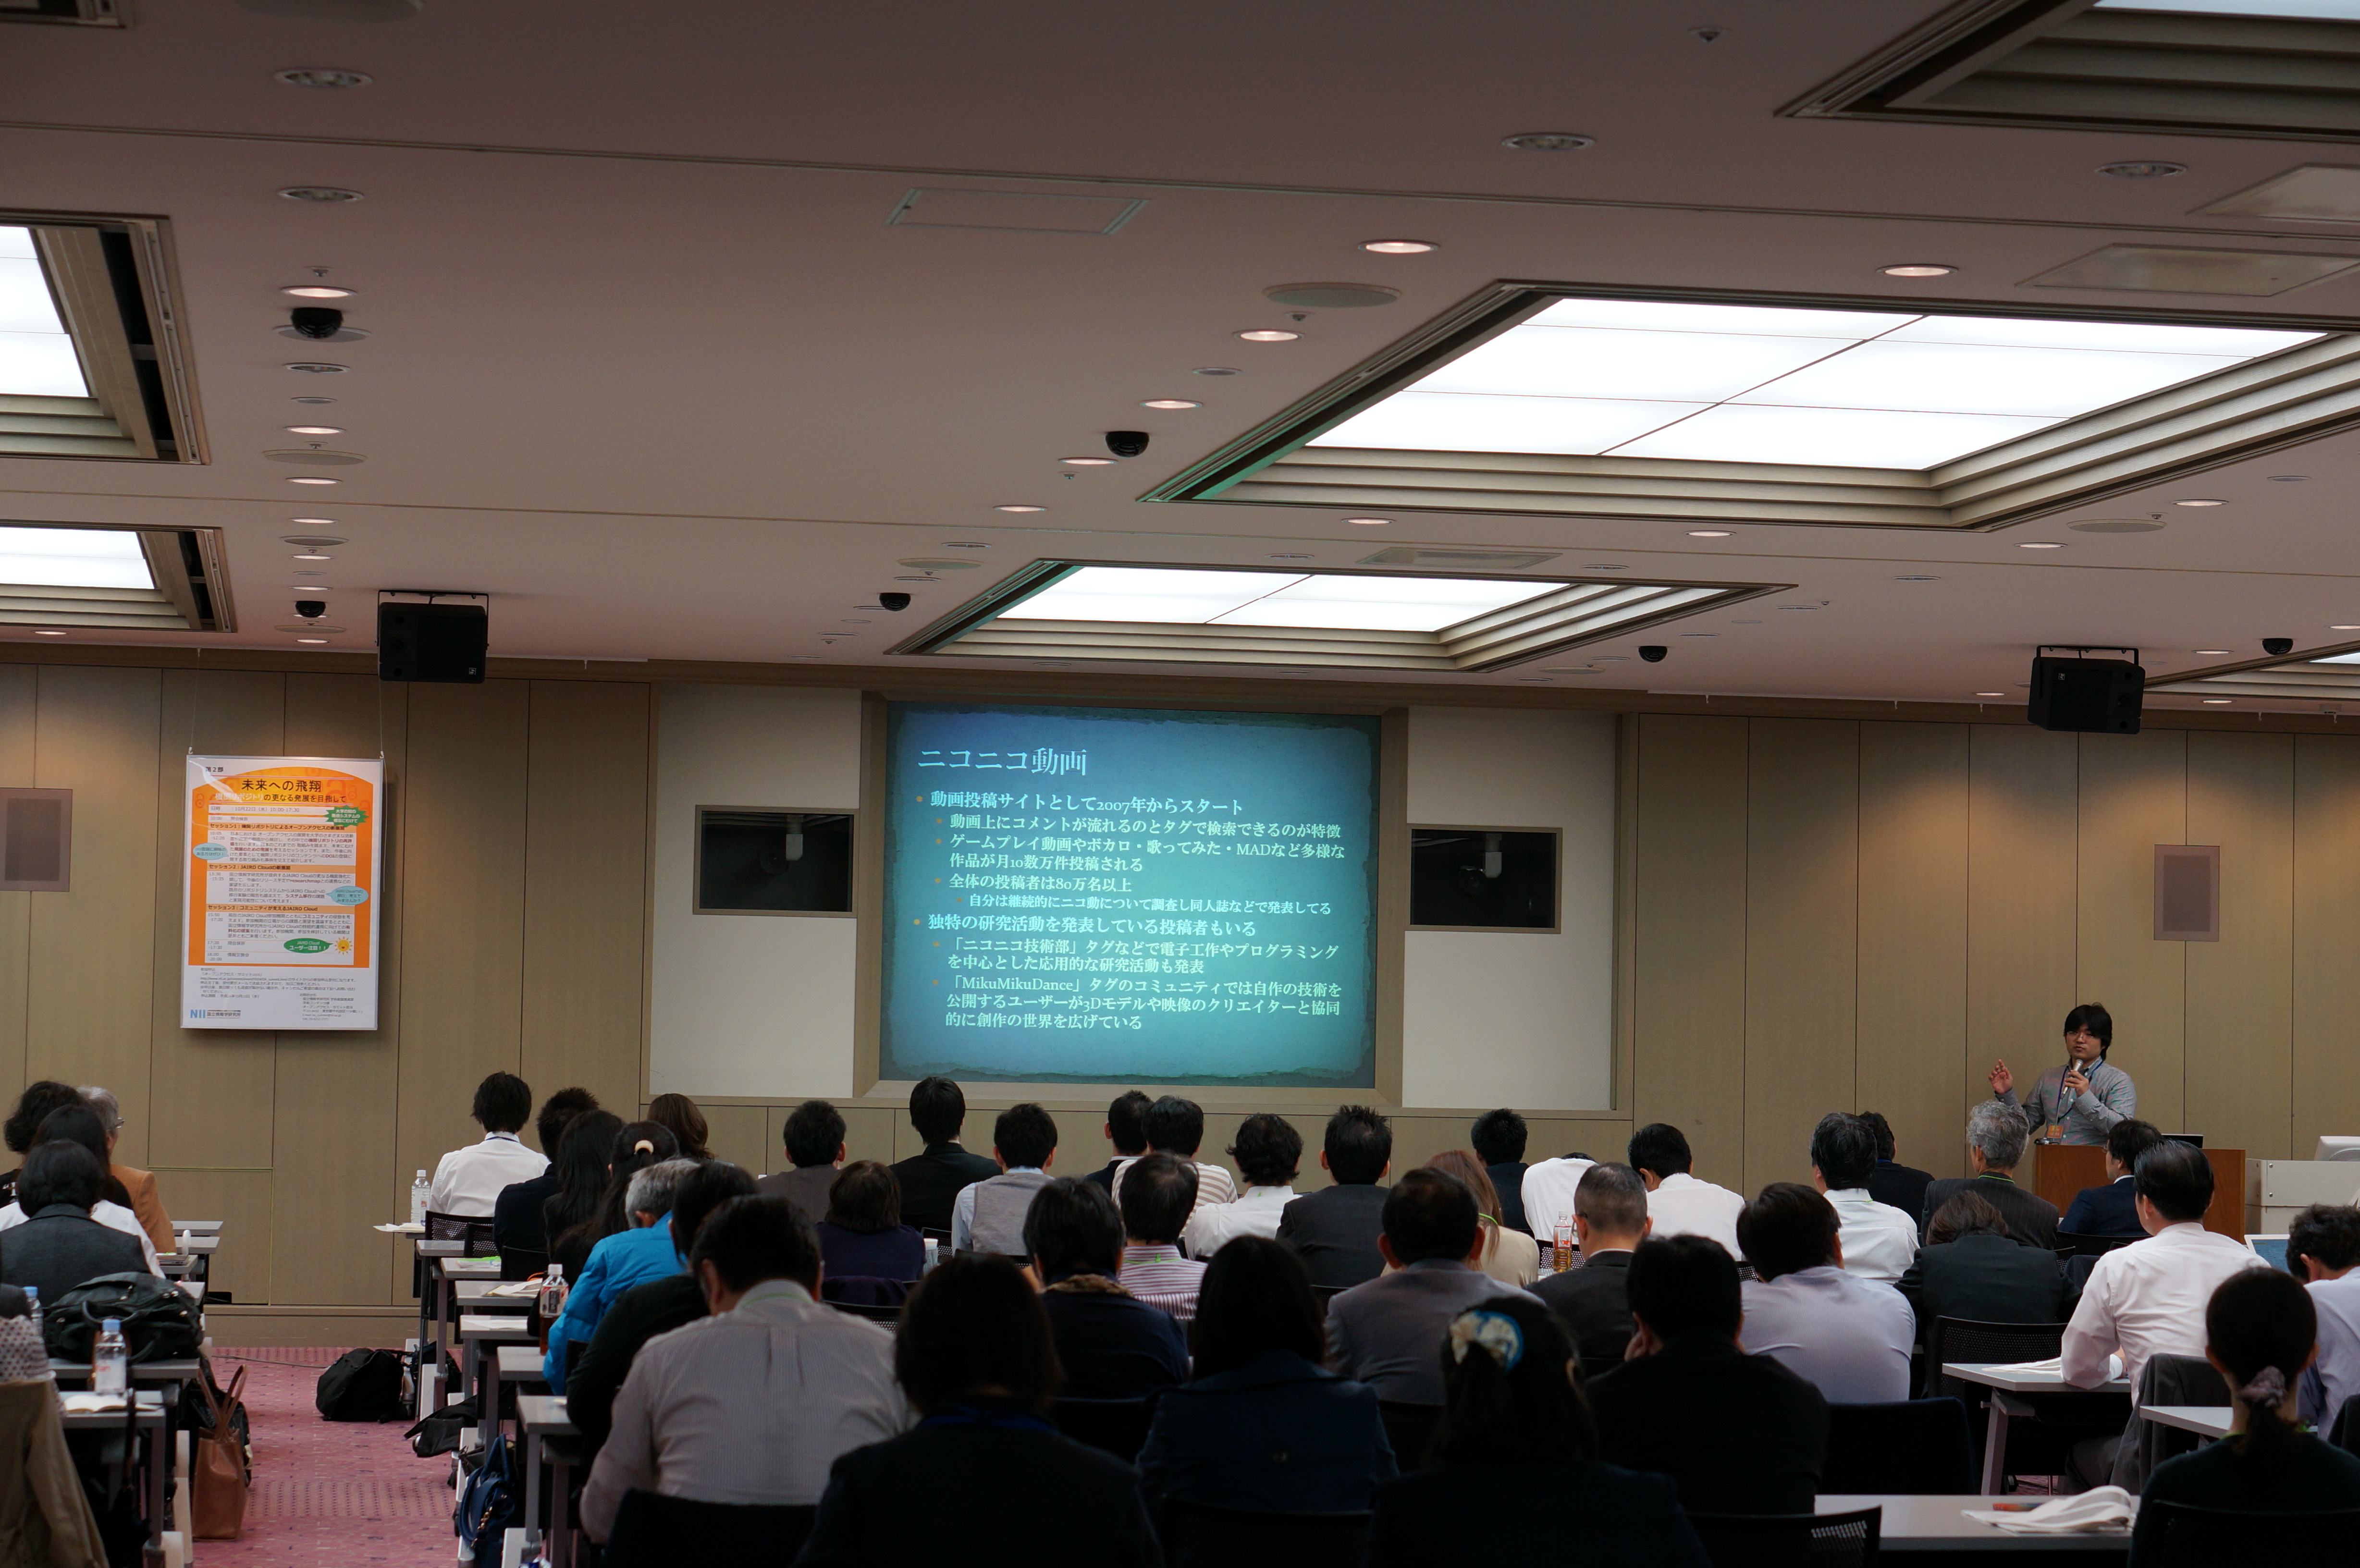 第3回 SPARC Japanセミナー2014